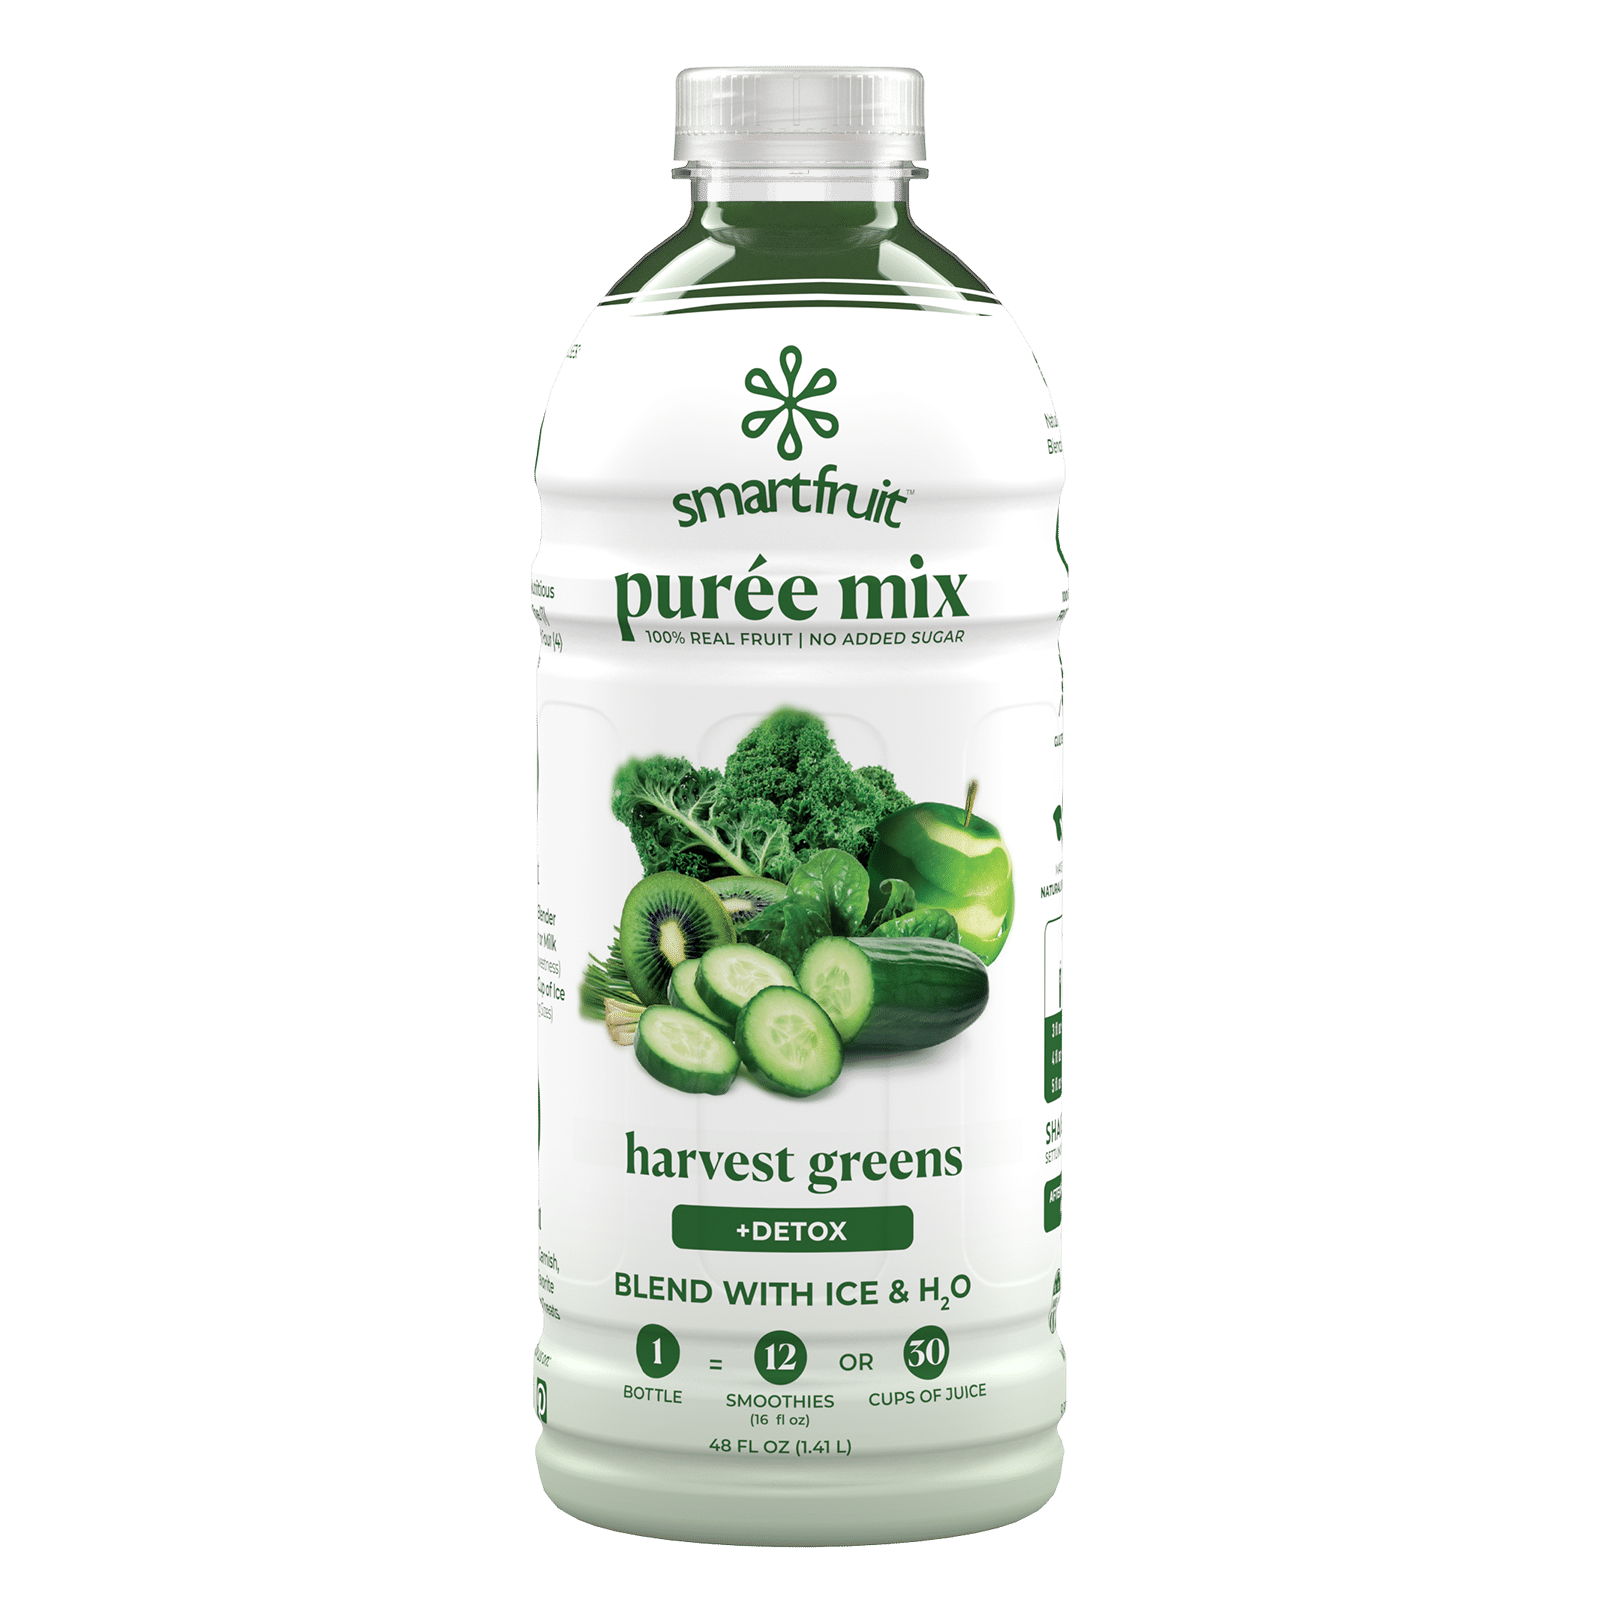 Smartfruit Harvest Greens Puree Mix bottle